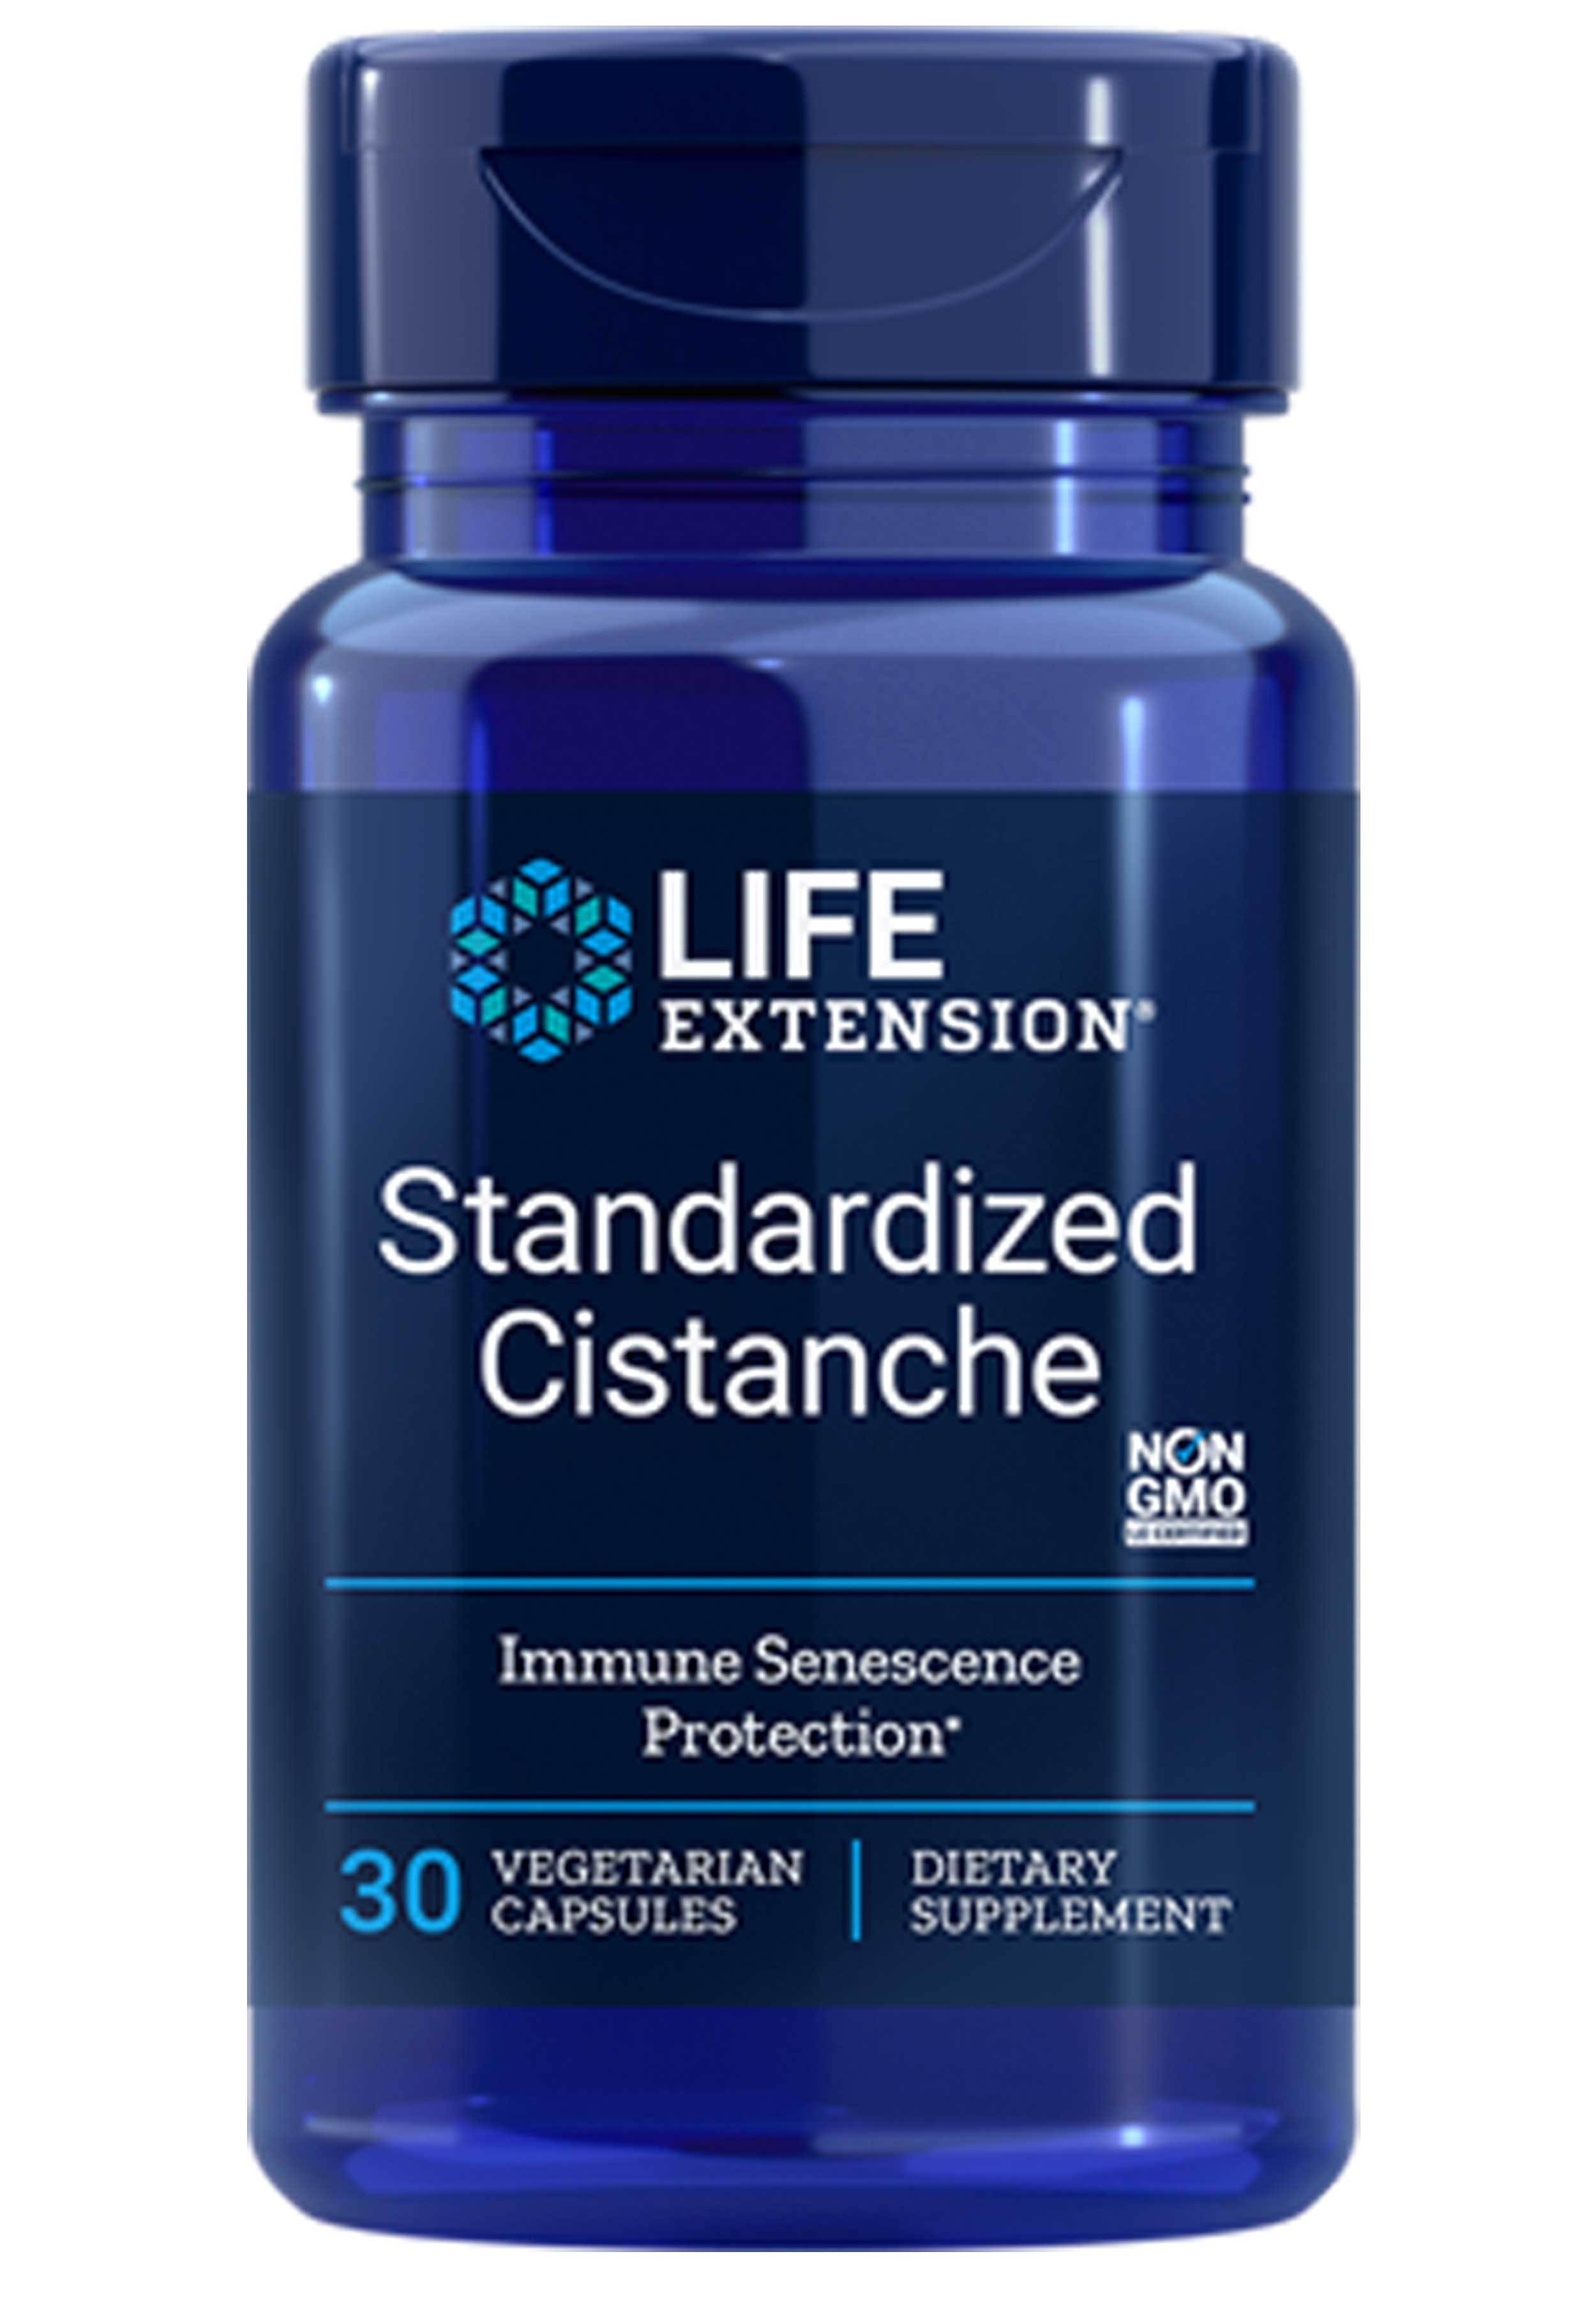 Life Extension Standardized Cistanche